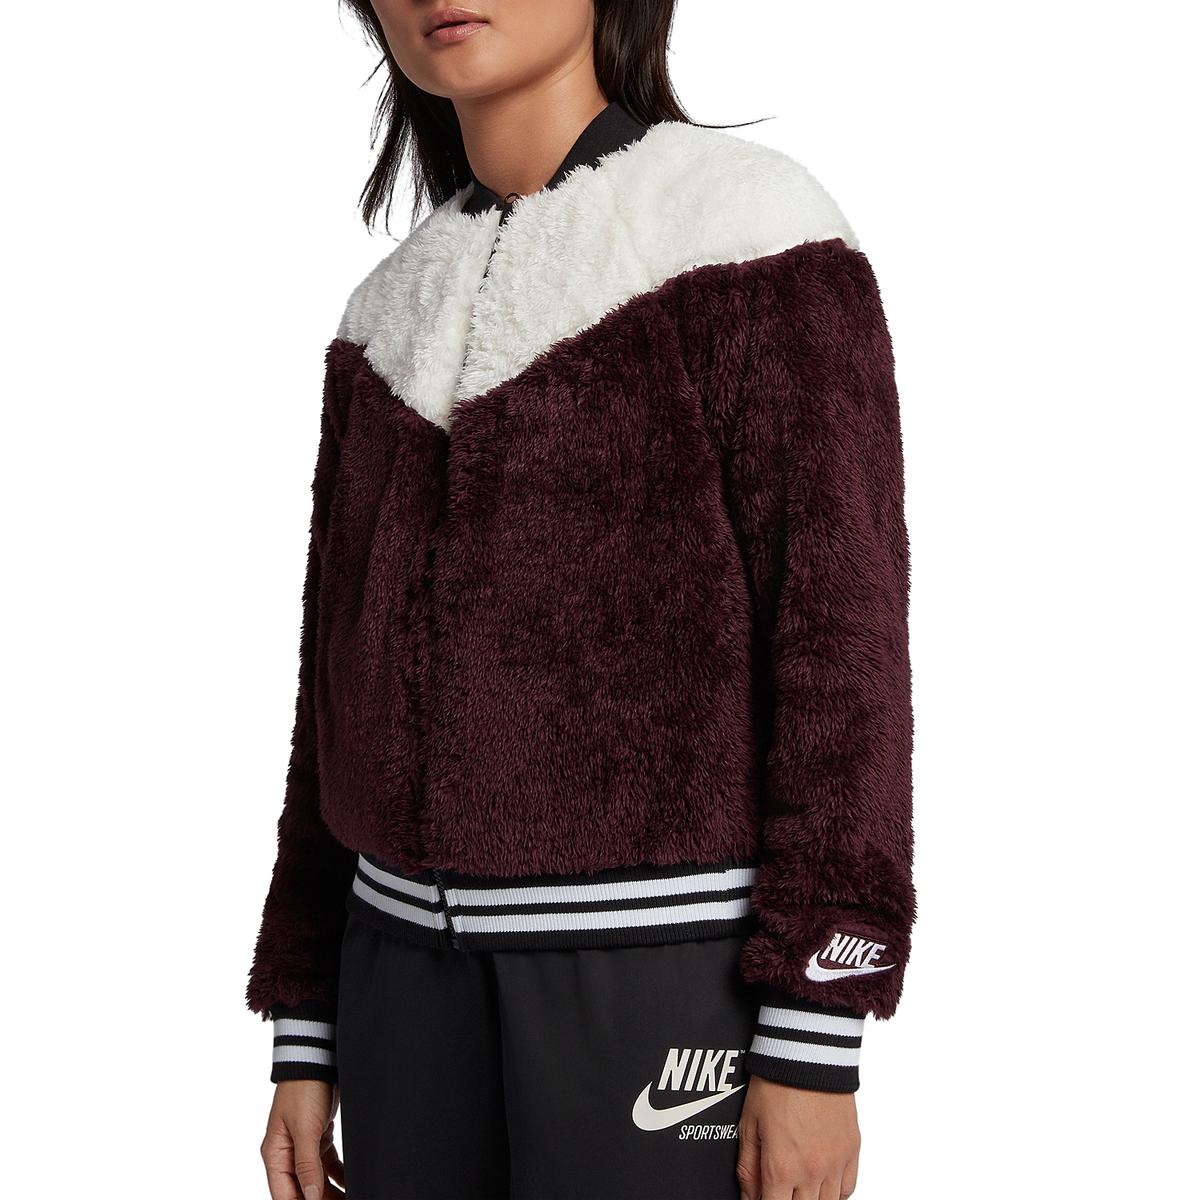 Nike Womens Wolf Teddy Purple Colorblock Bomber Jacket Outerwear S BHFO ...